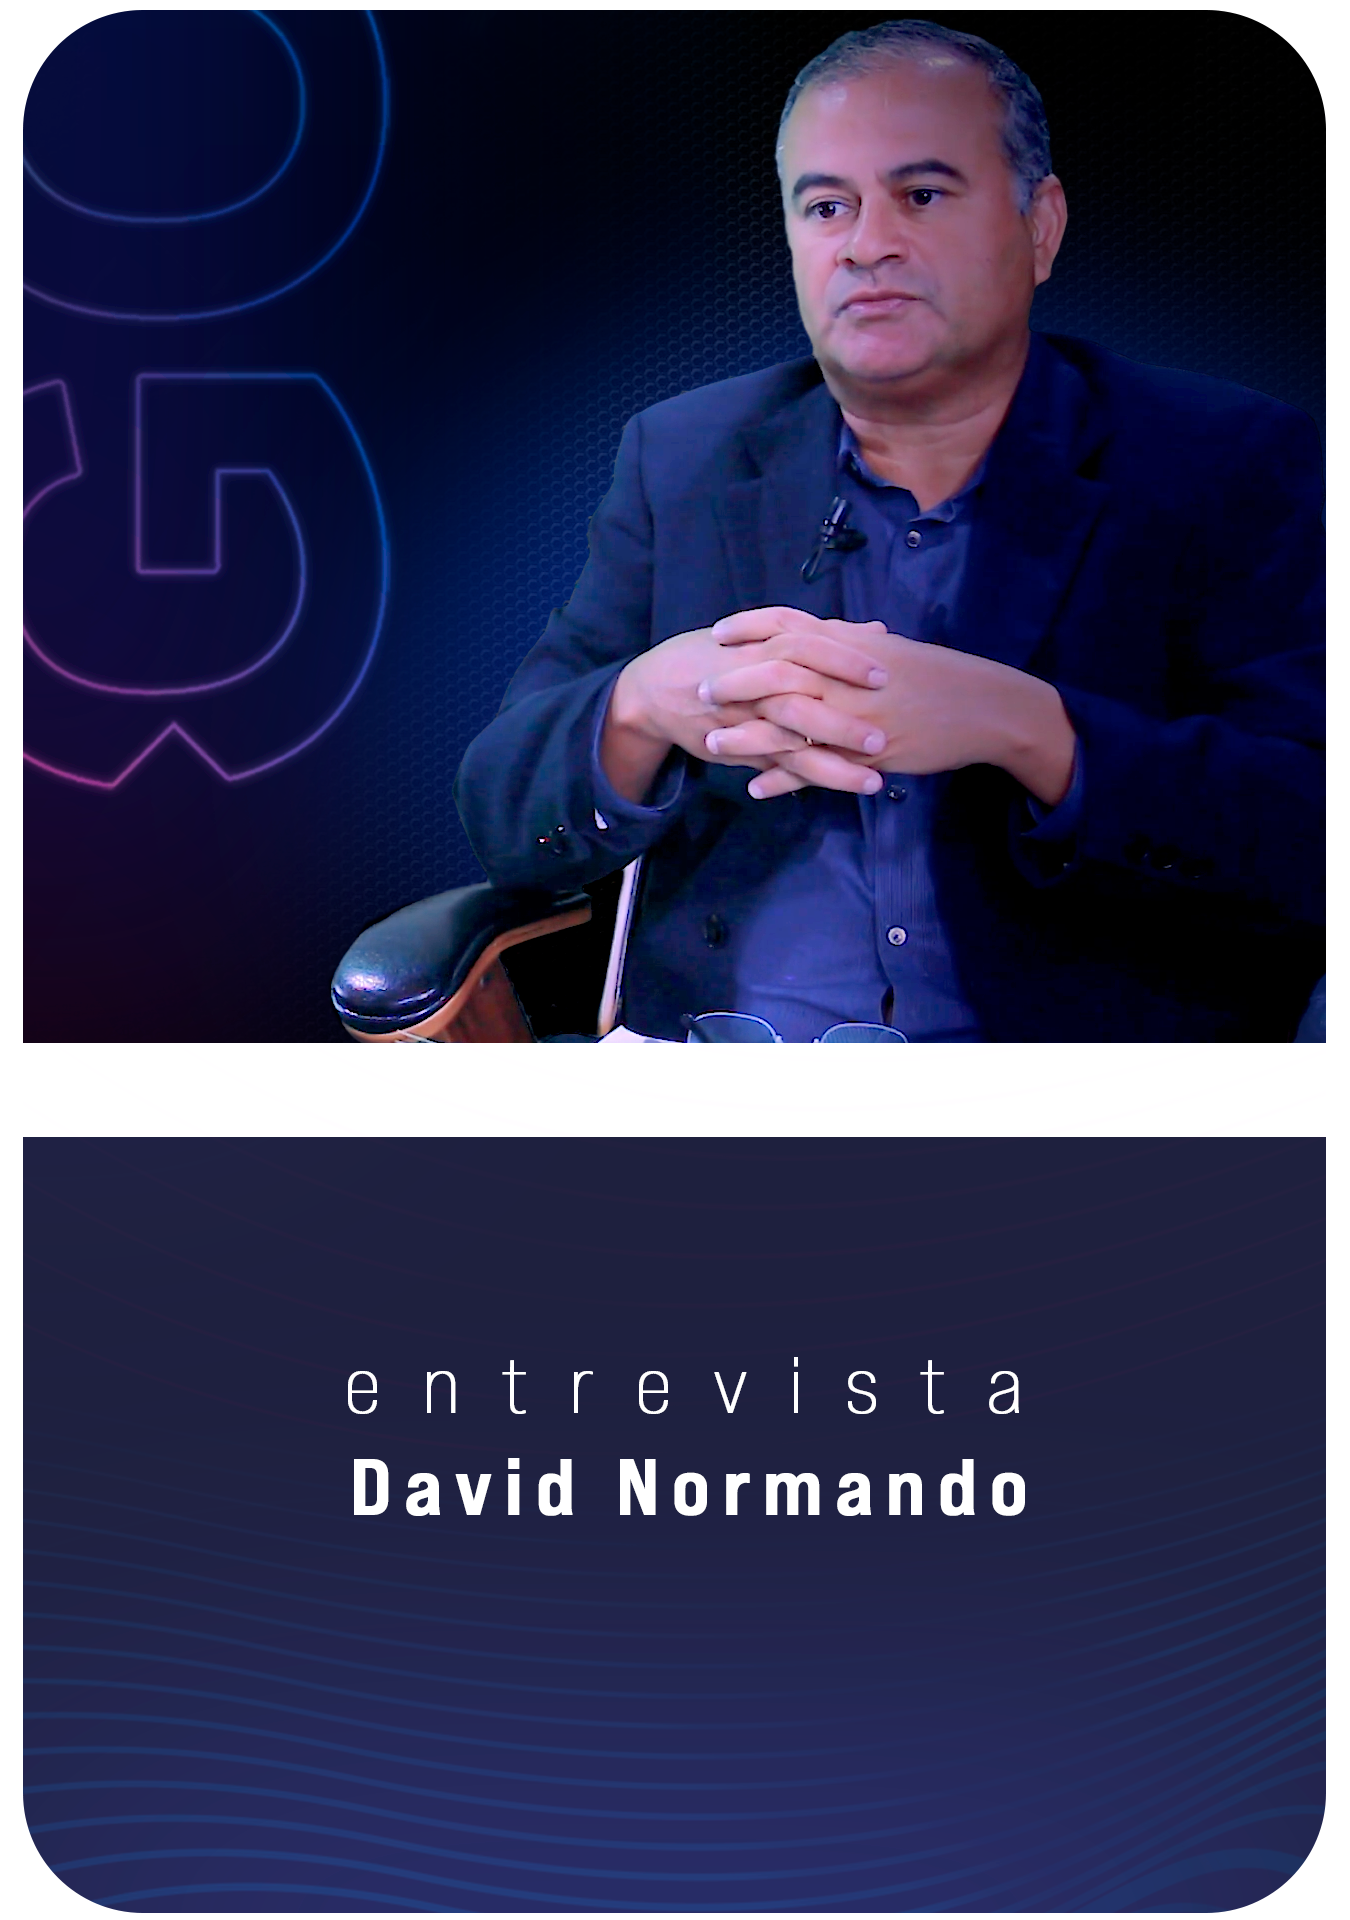 Dr. David Normando